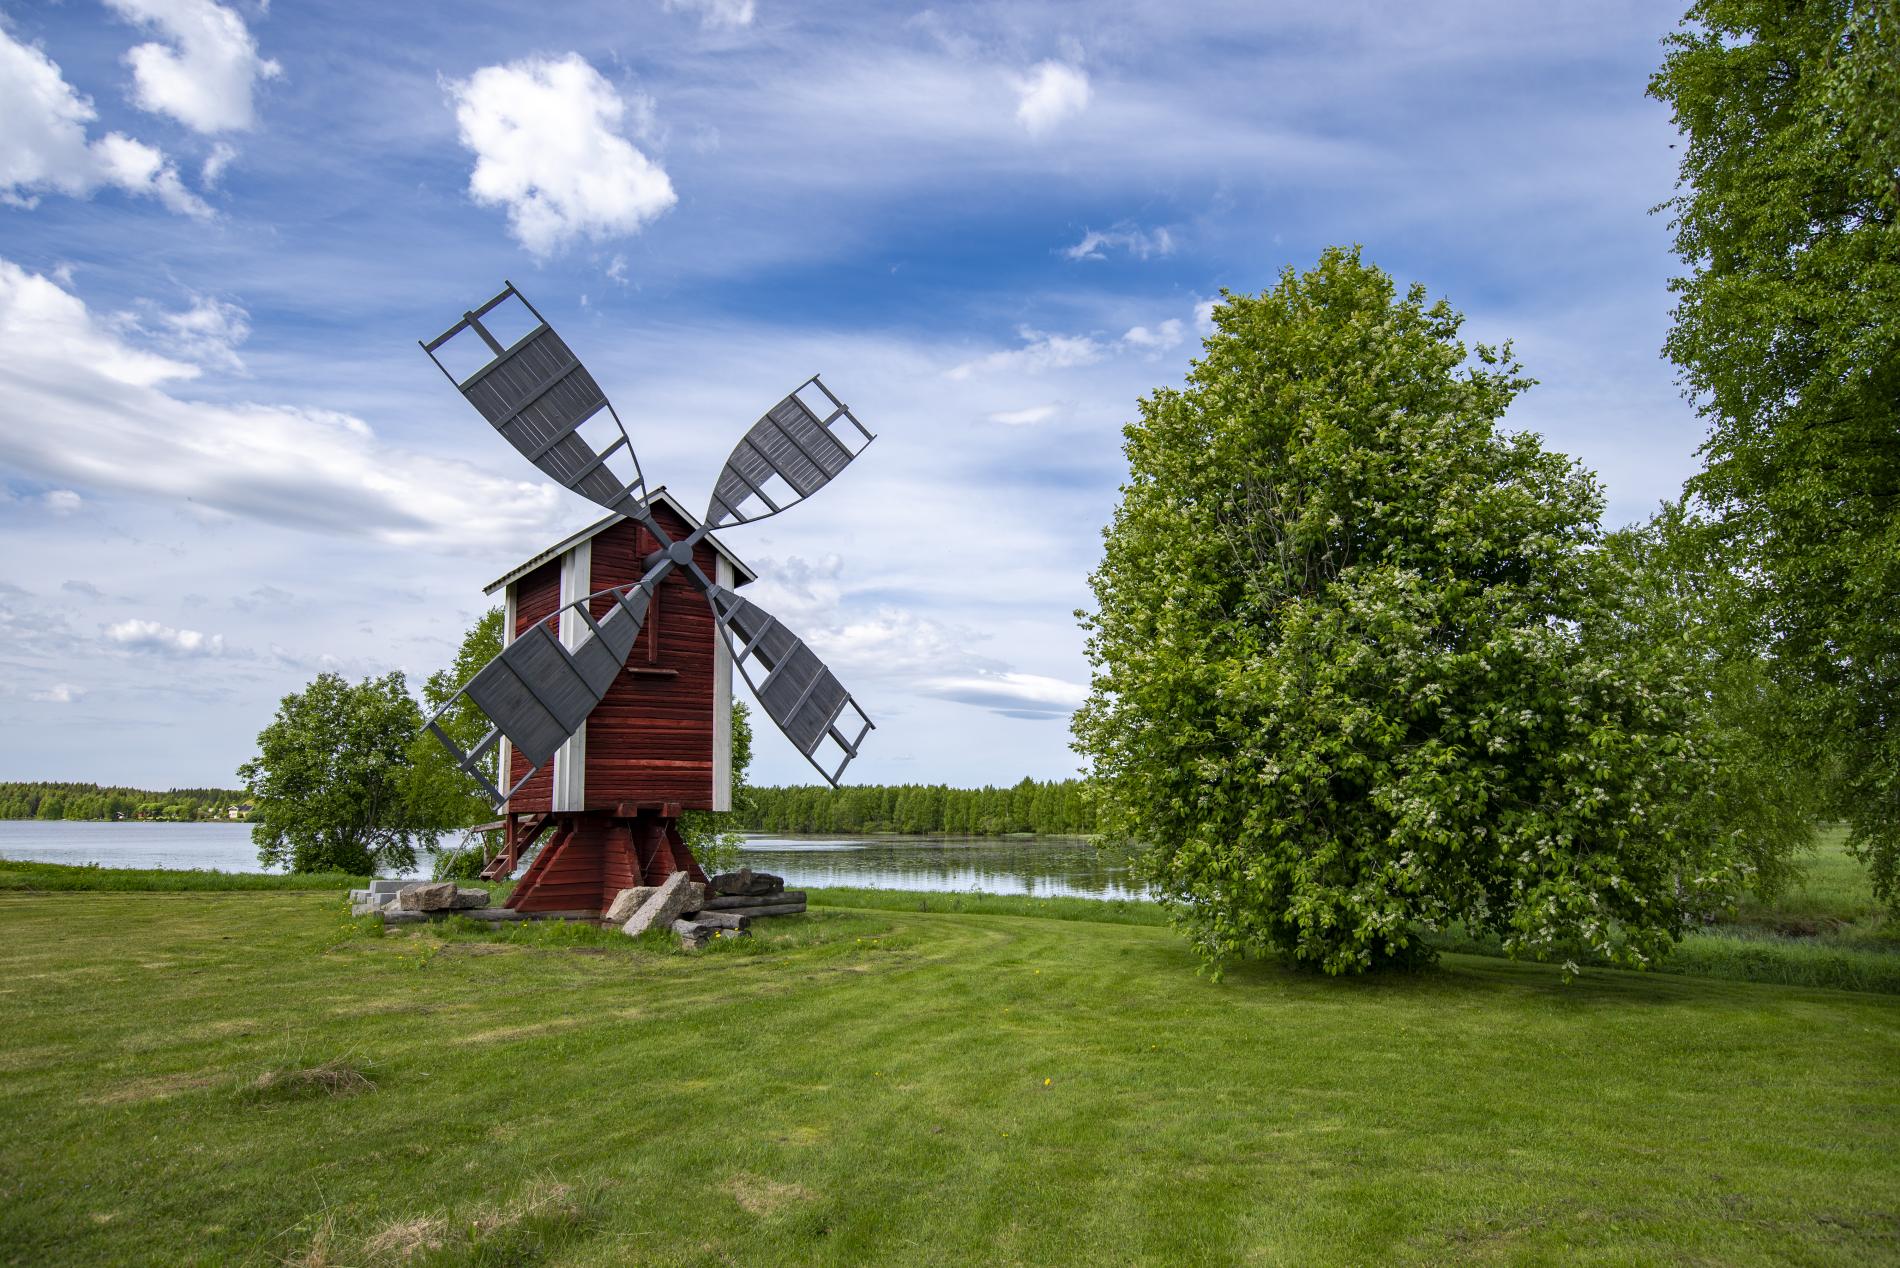 A wooden windmill on the shore of the summer-green Lake Kirkkojärvi.